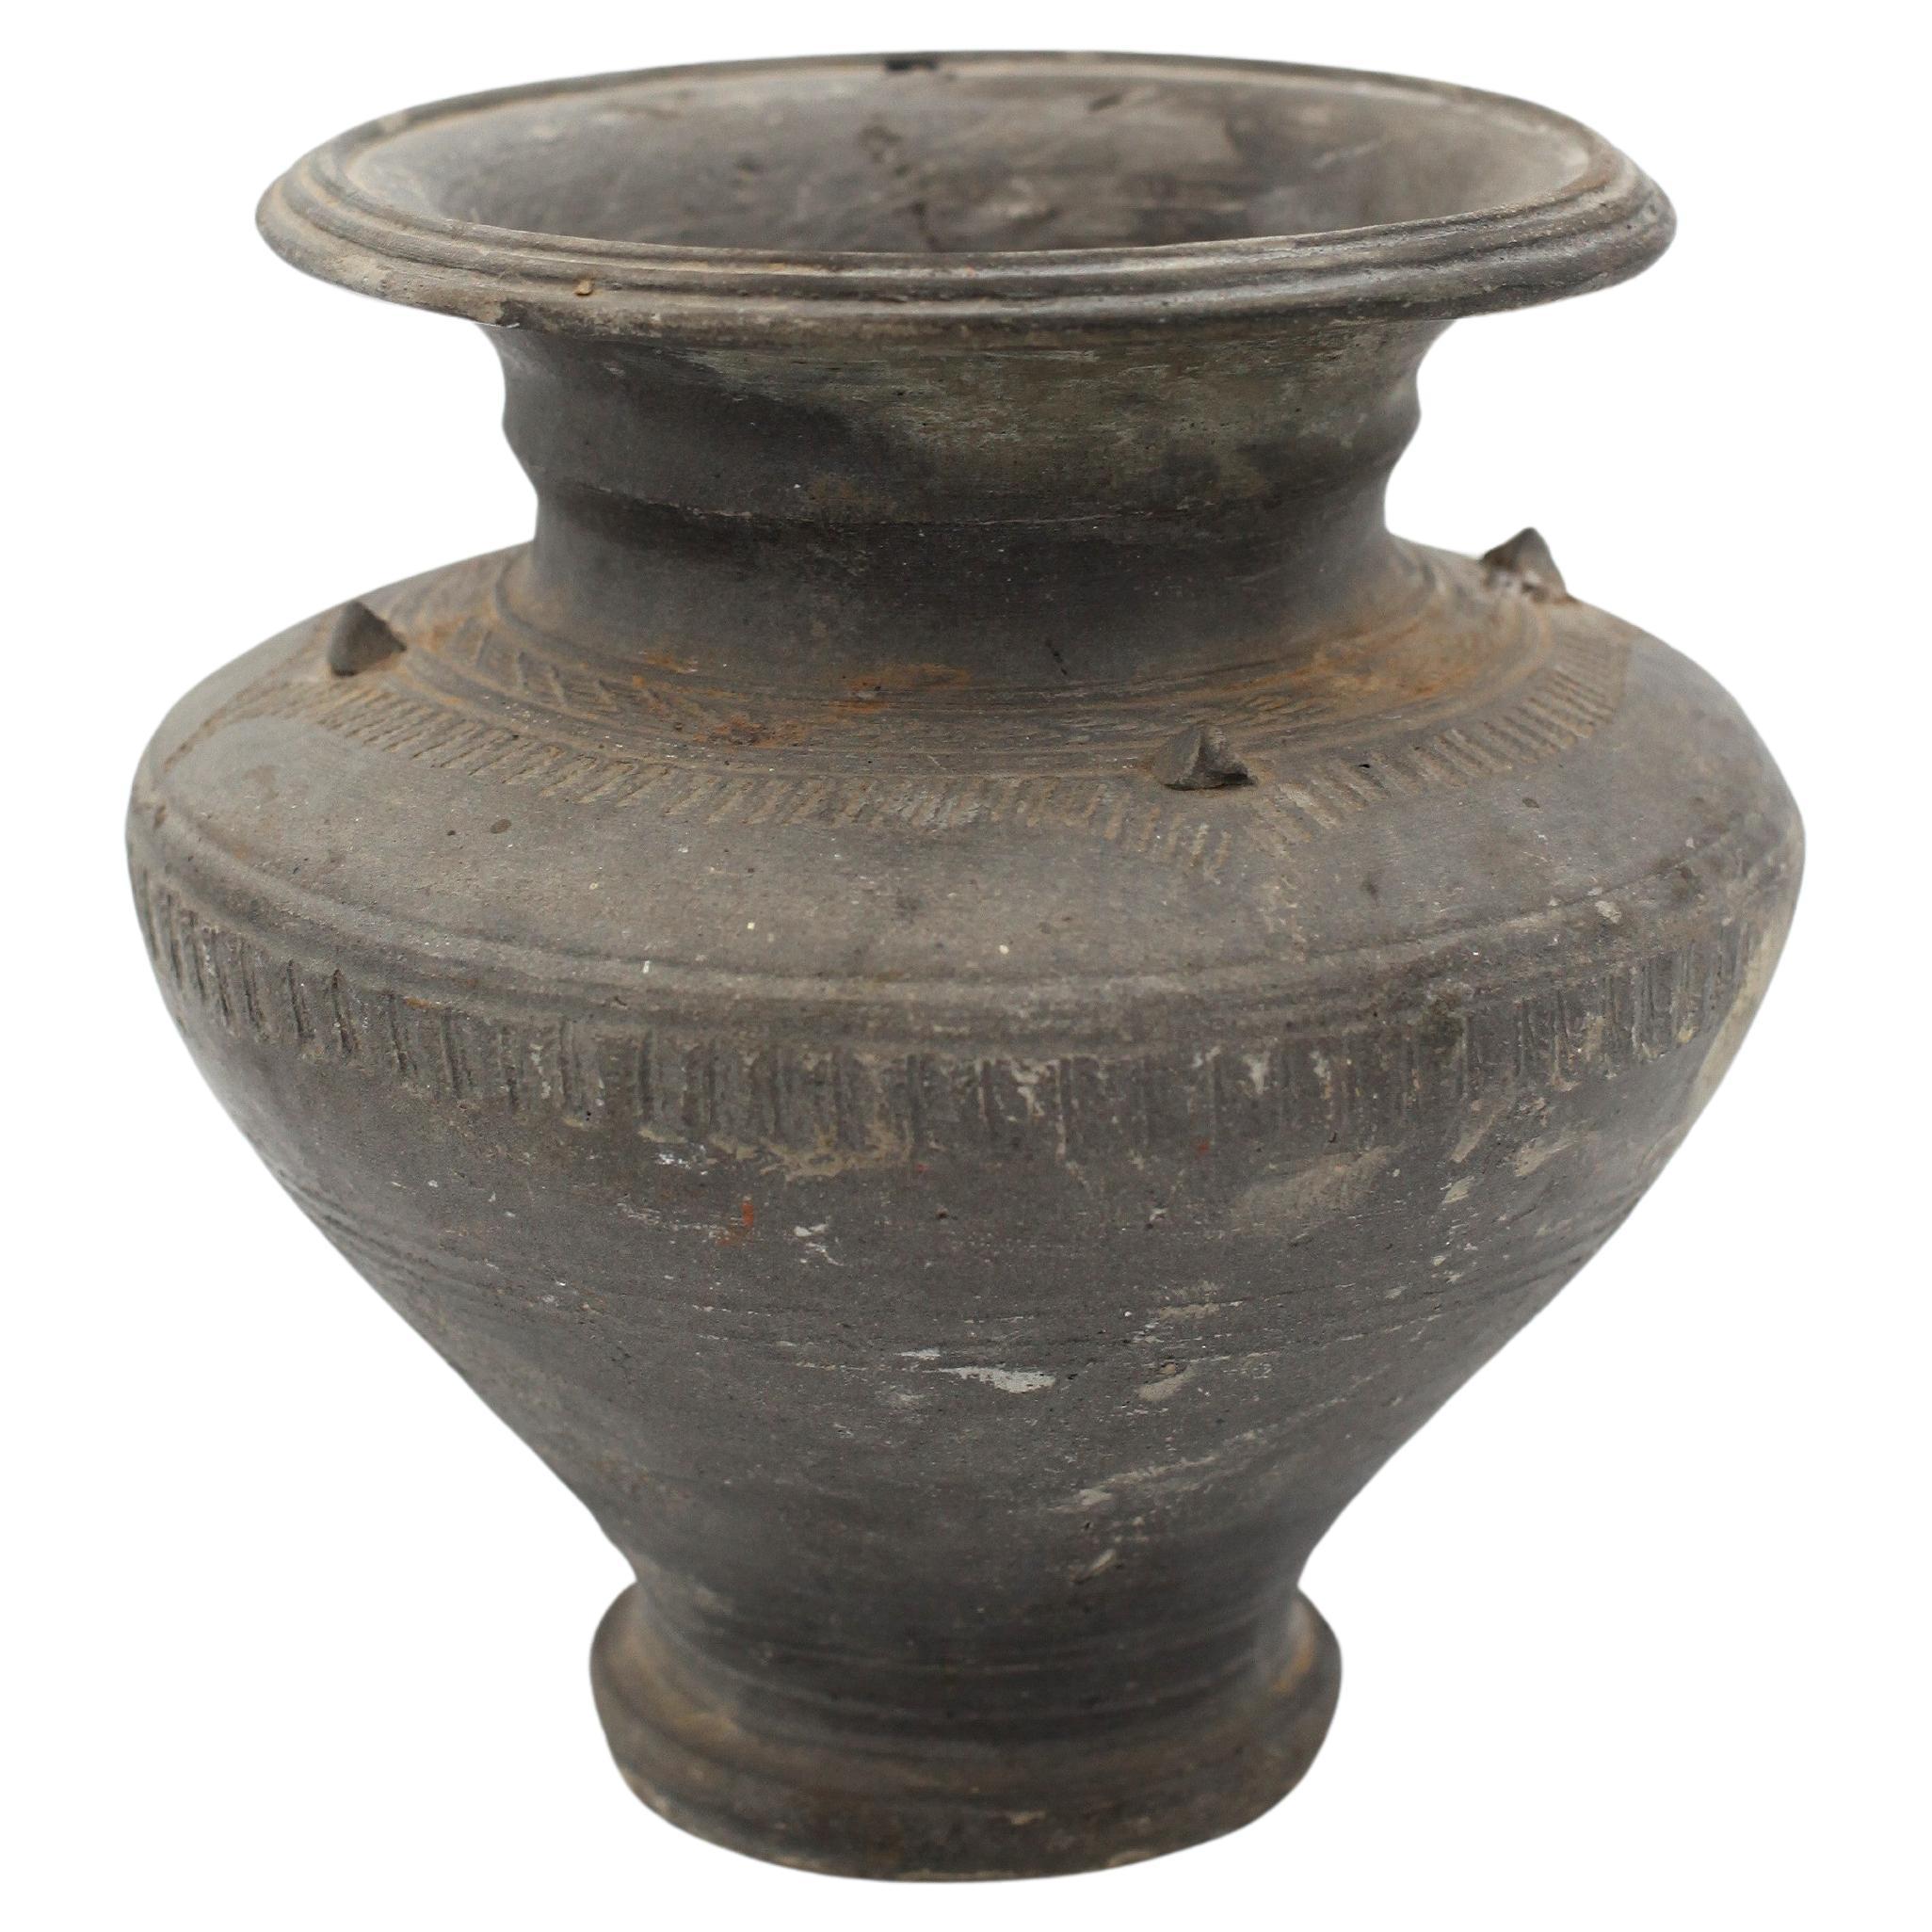 Thailändisches Khmer-Keramik-Gefäß aus dem 12/13.